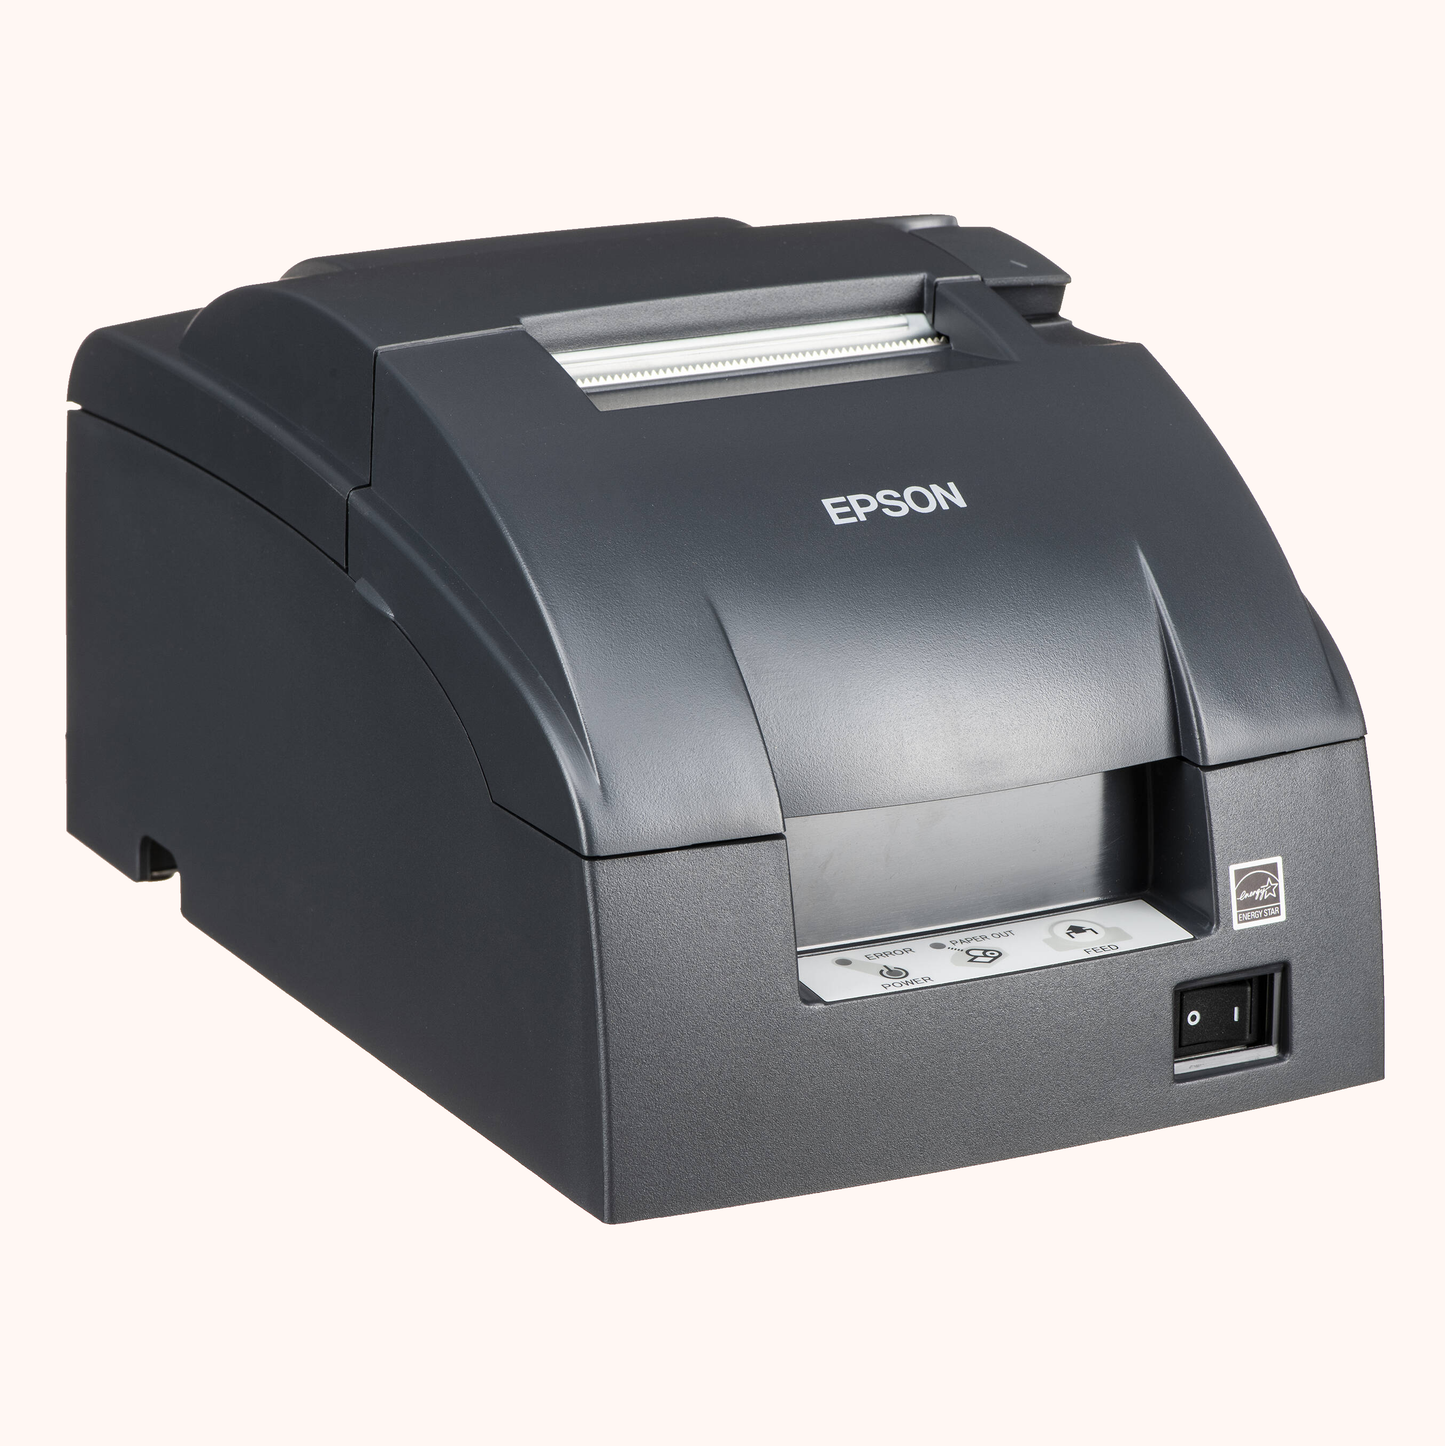 Epson Tag Printer